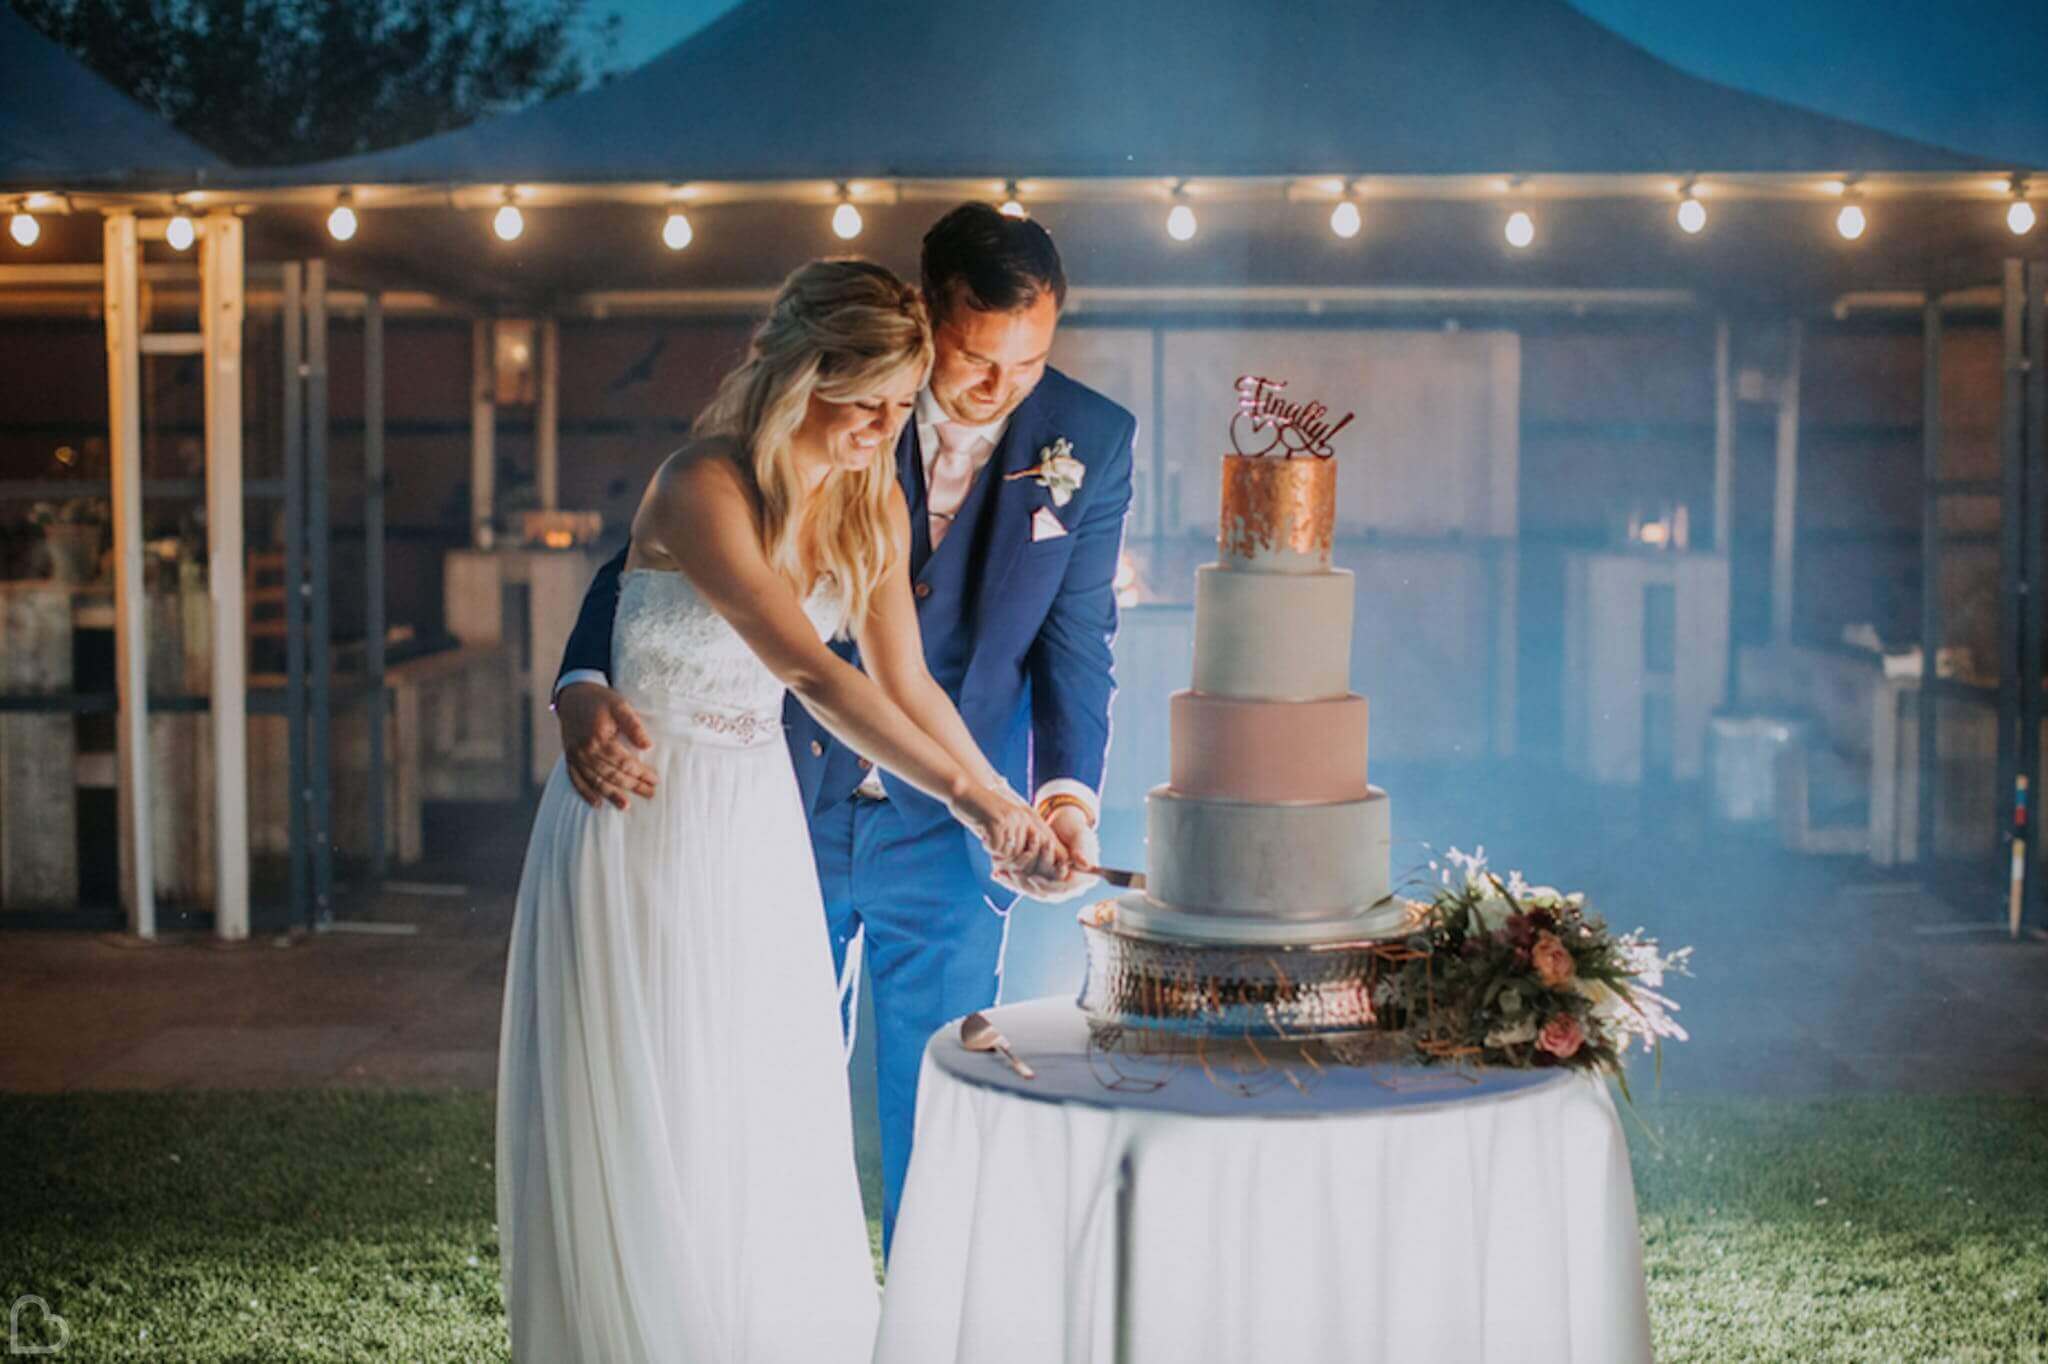 newlyweds cutting their wedding cake at southend barns wedding venue